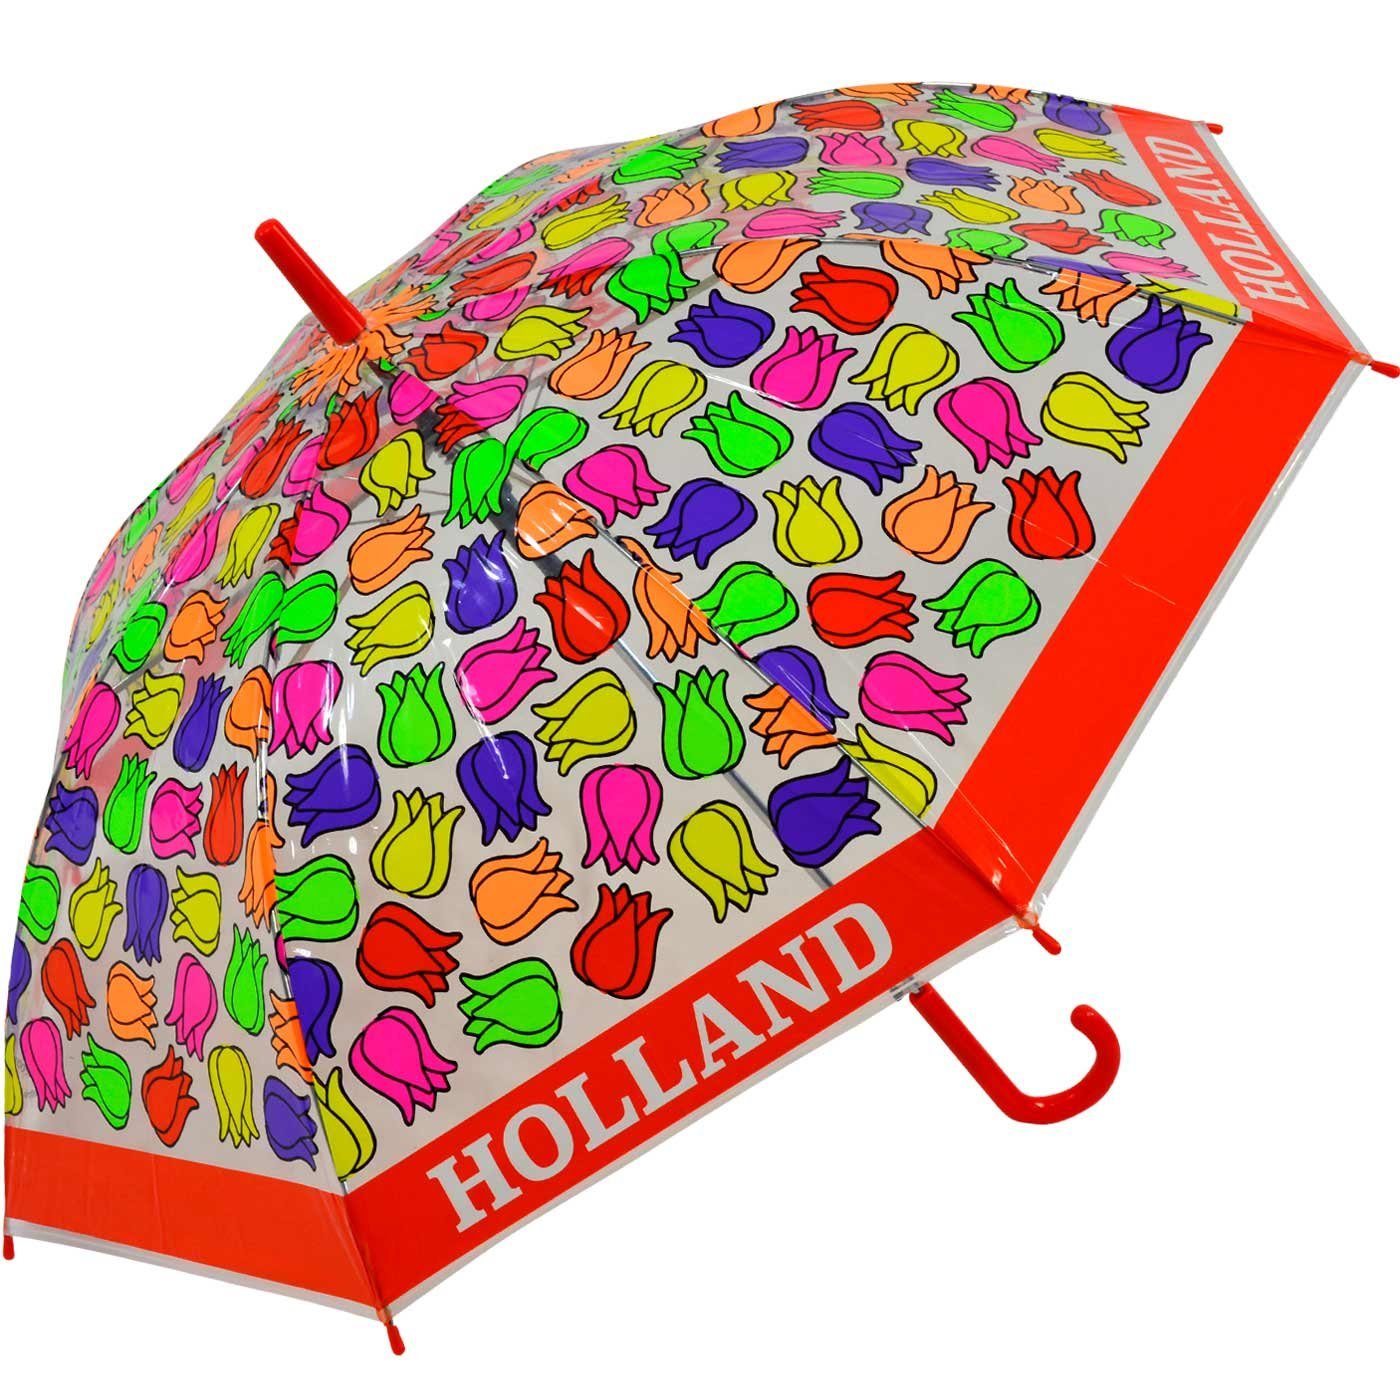 Impliva Langregenschirm Falconetti transparent - Kinderschirm durchsichtig rot bunt Tulpen